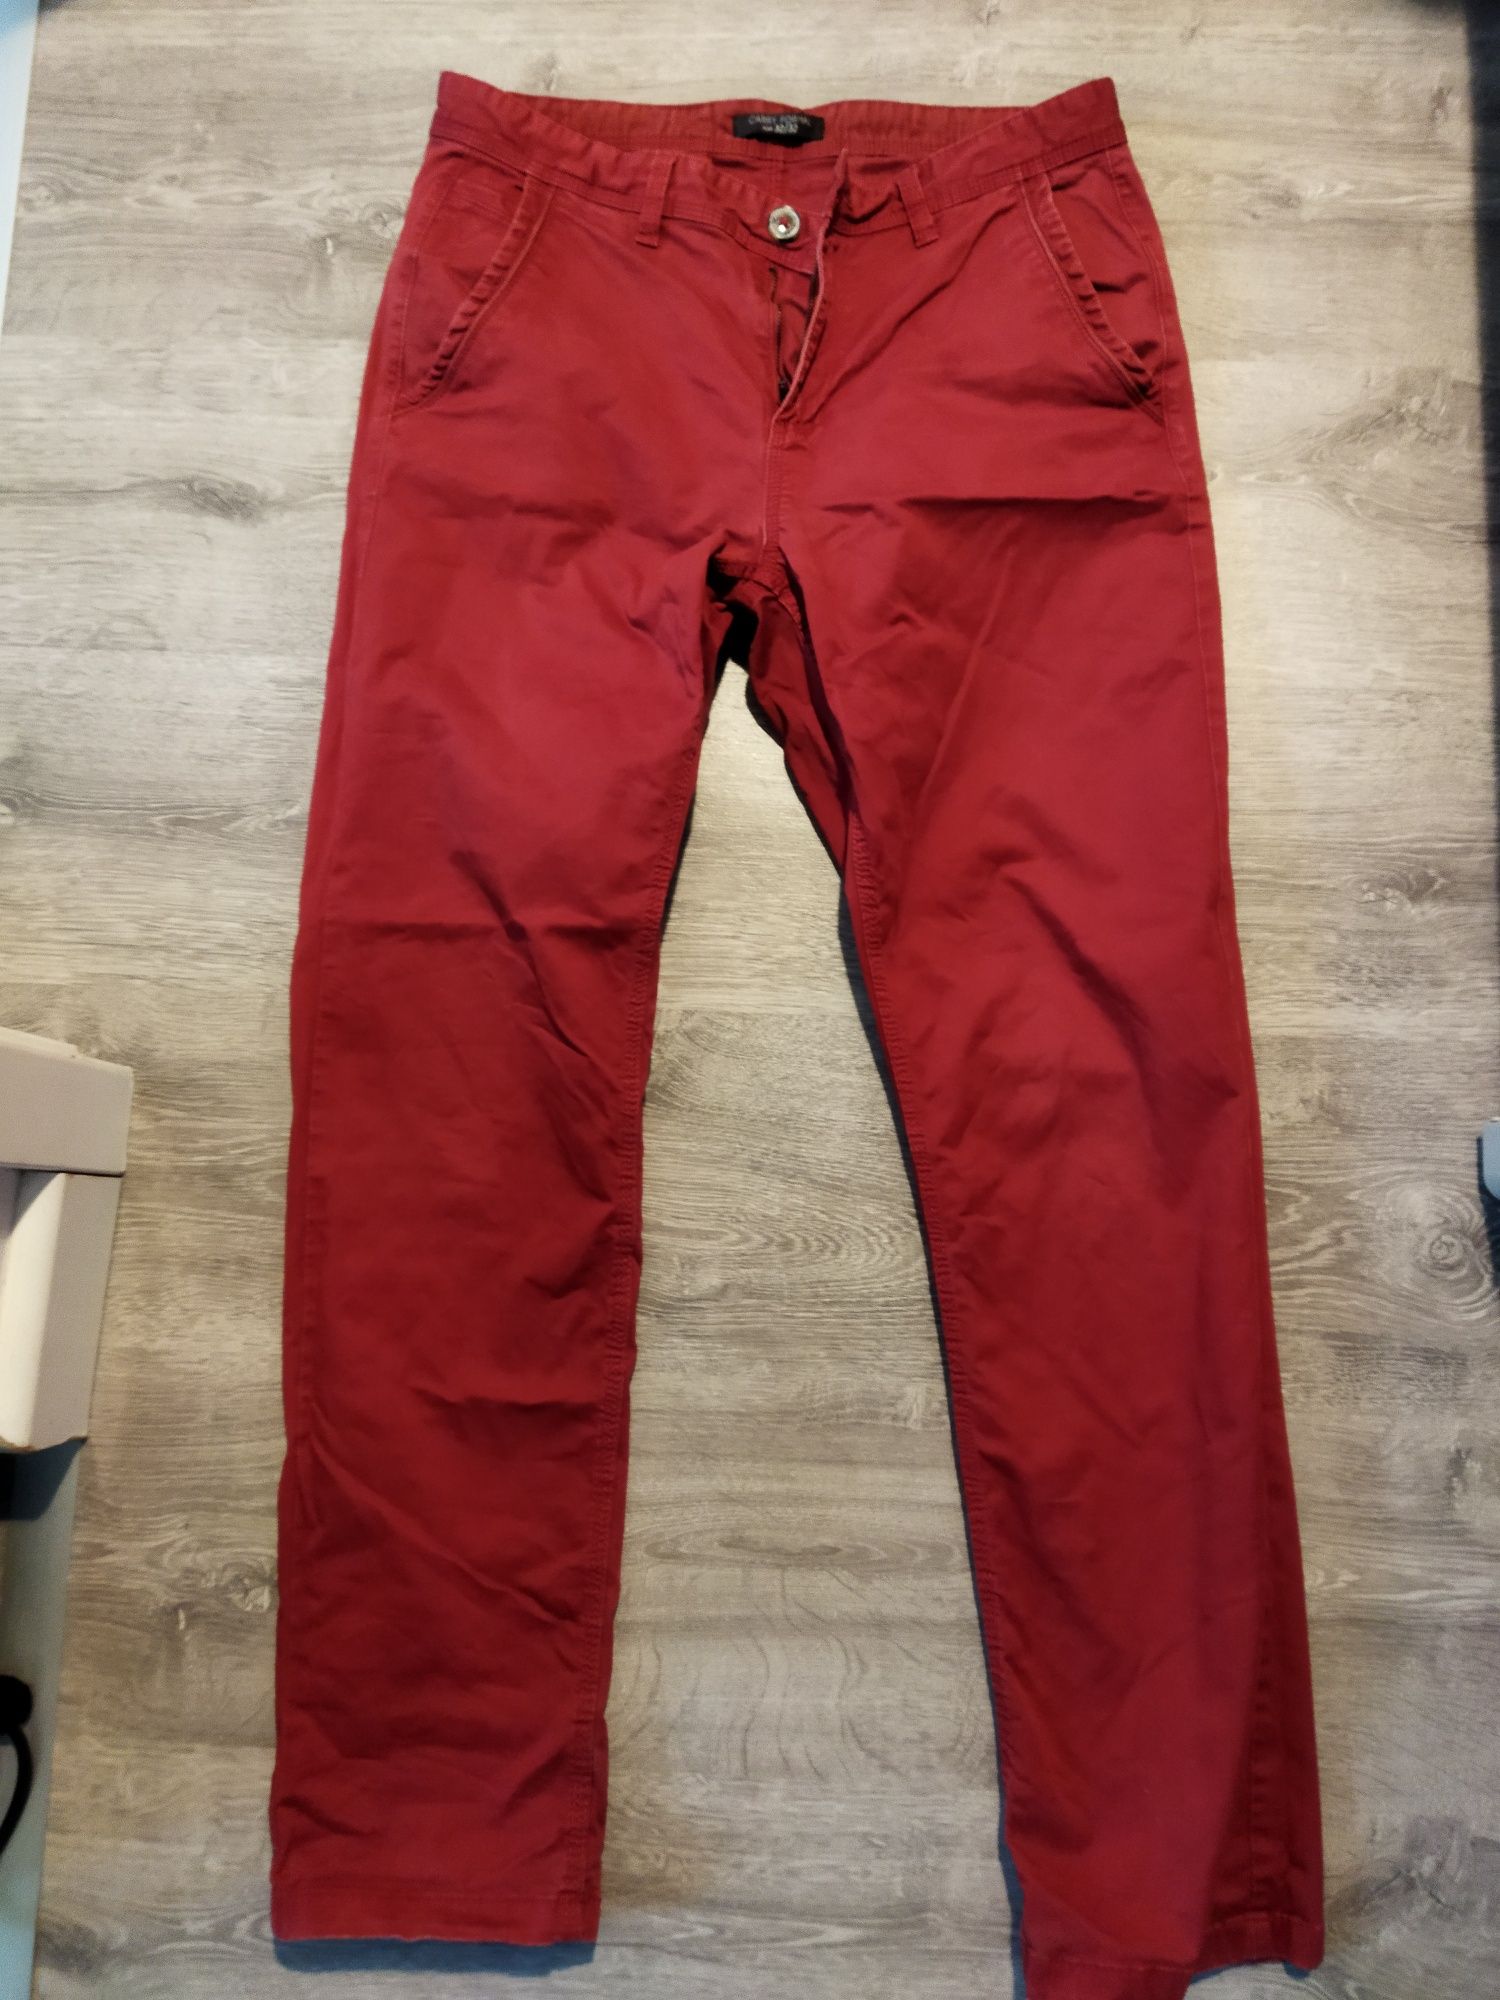 Spodnie Carry formal 32/32 czerwone bordowe